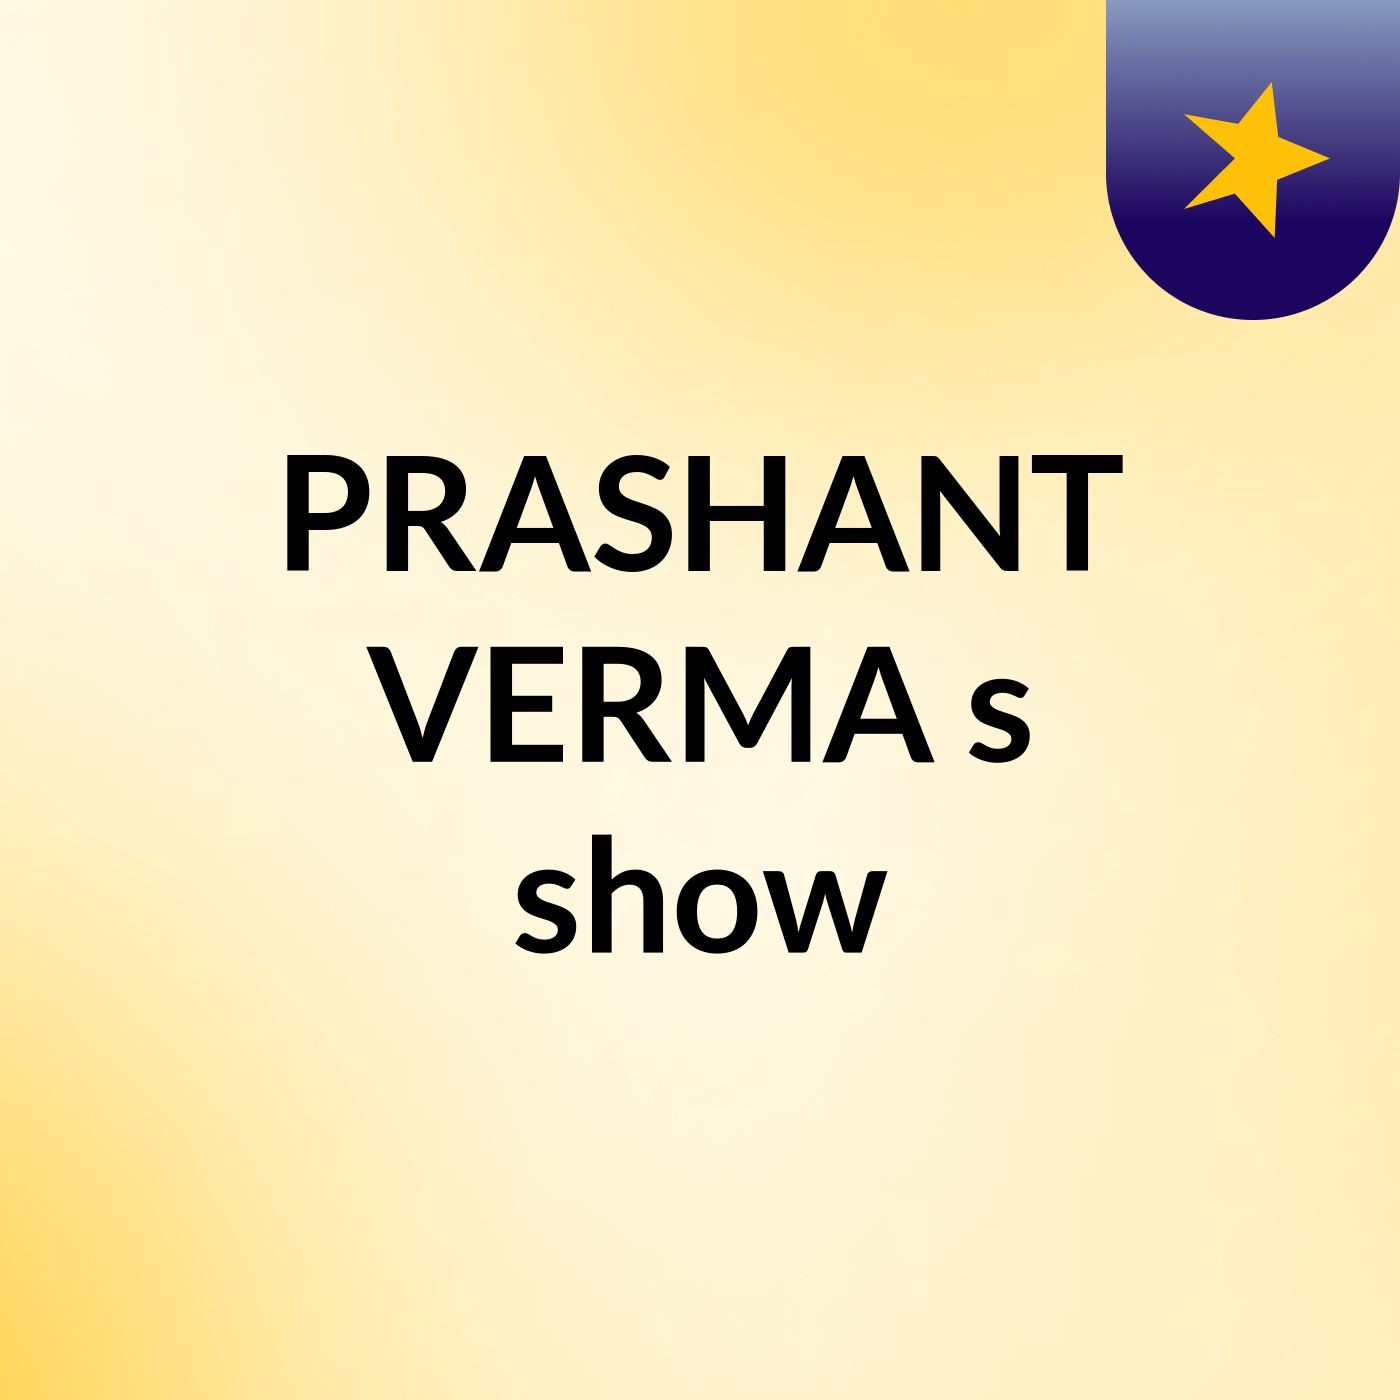 PRASHANT VERMA's show